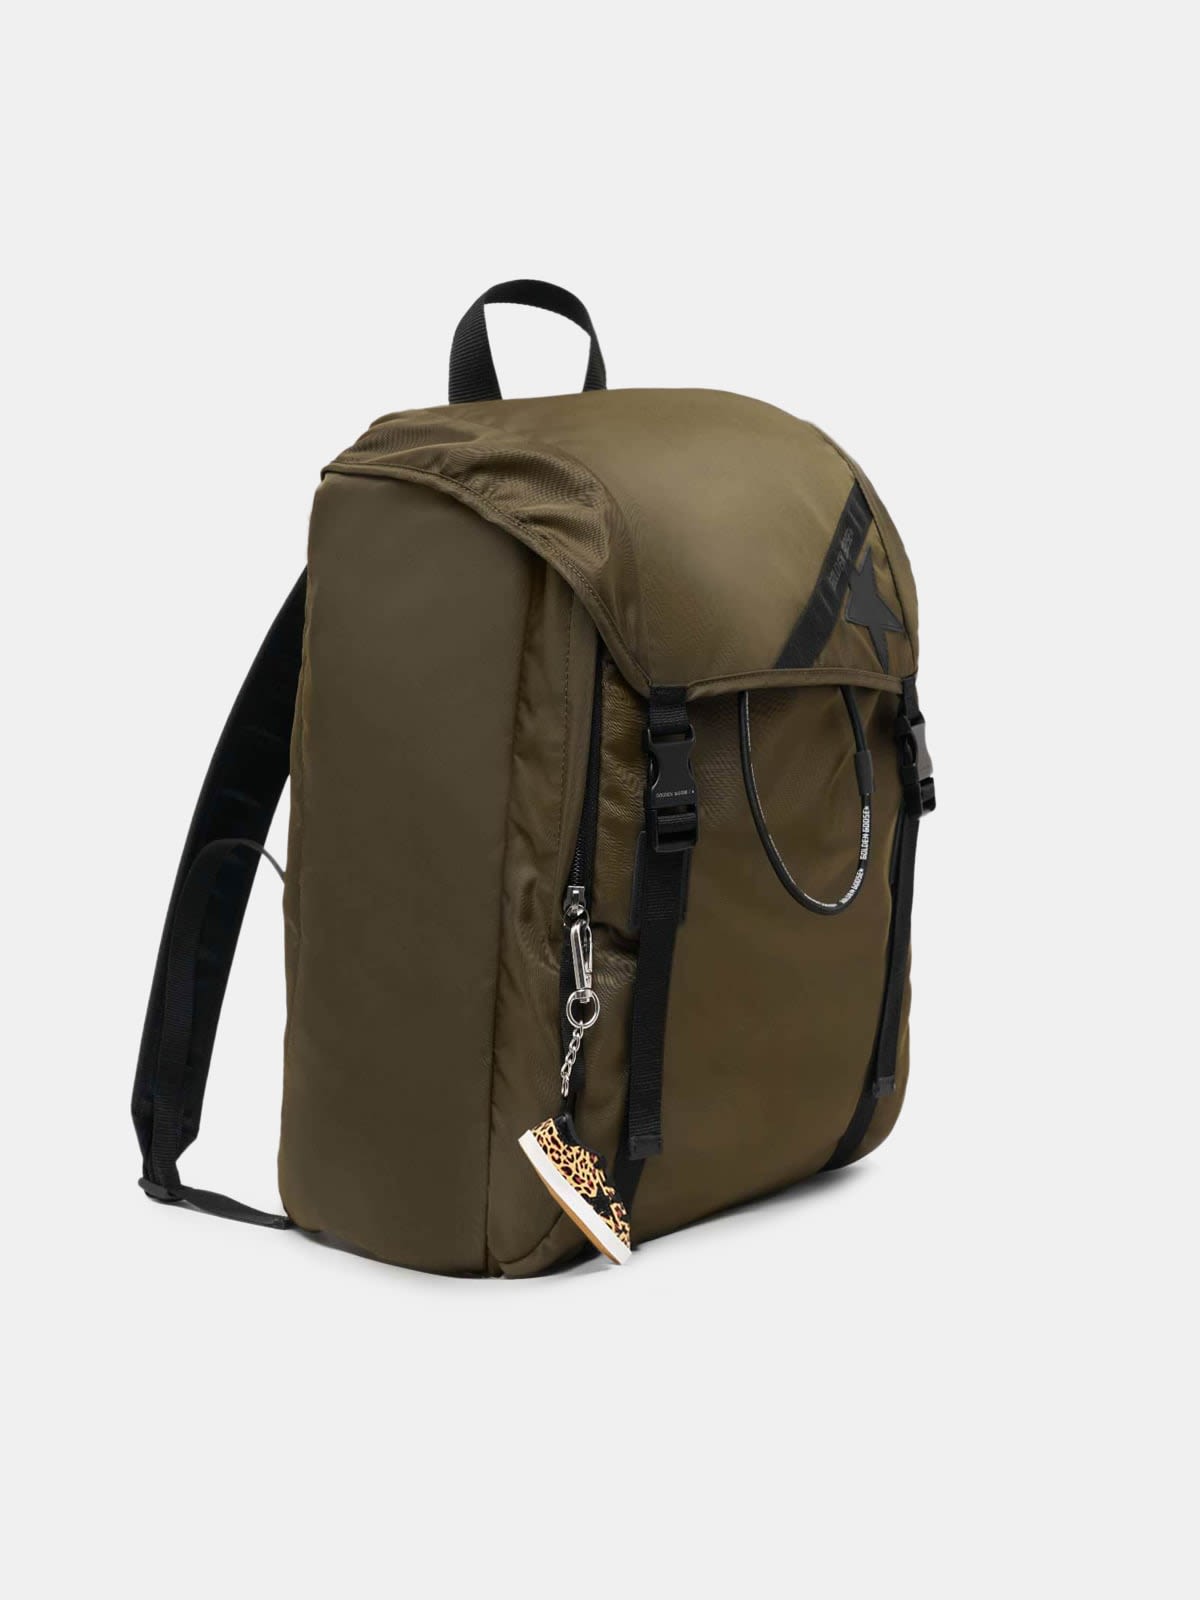 Olive-green nylon Journey backpack